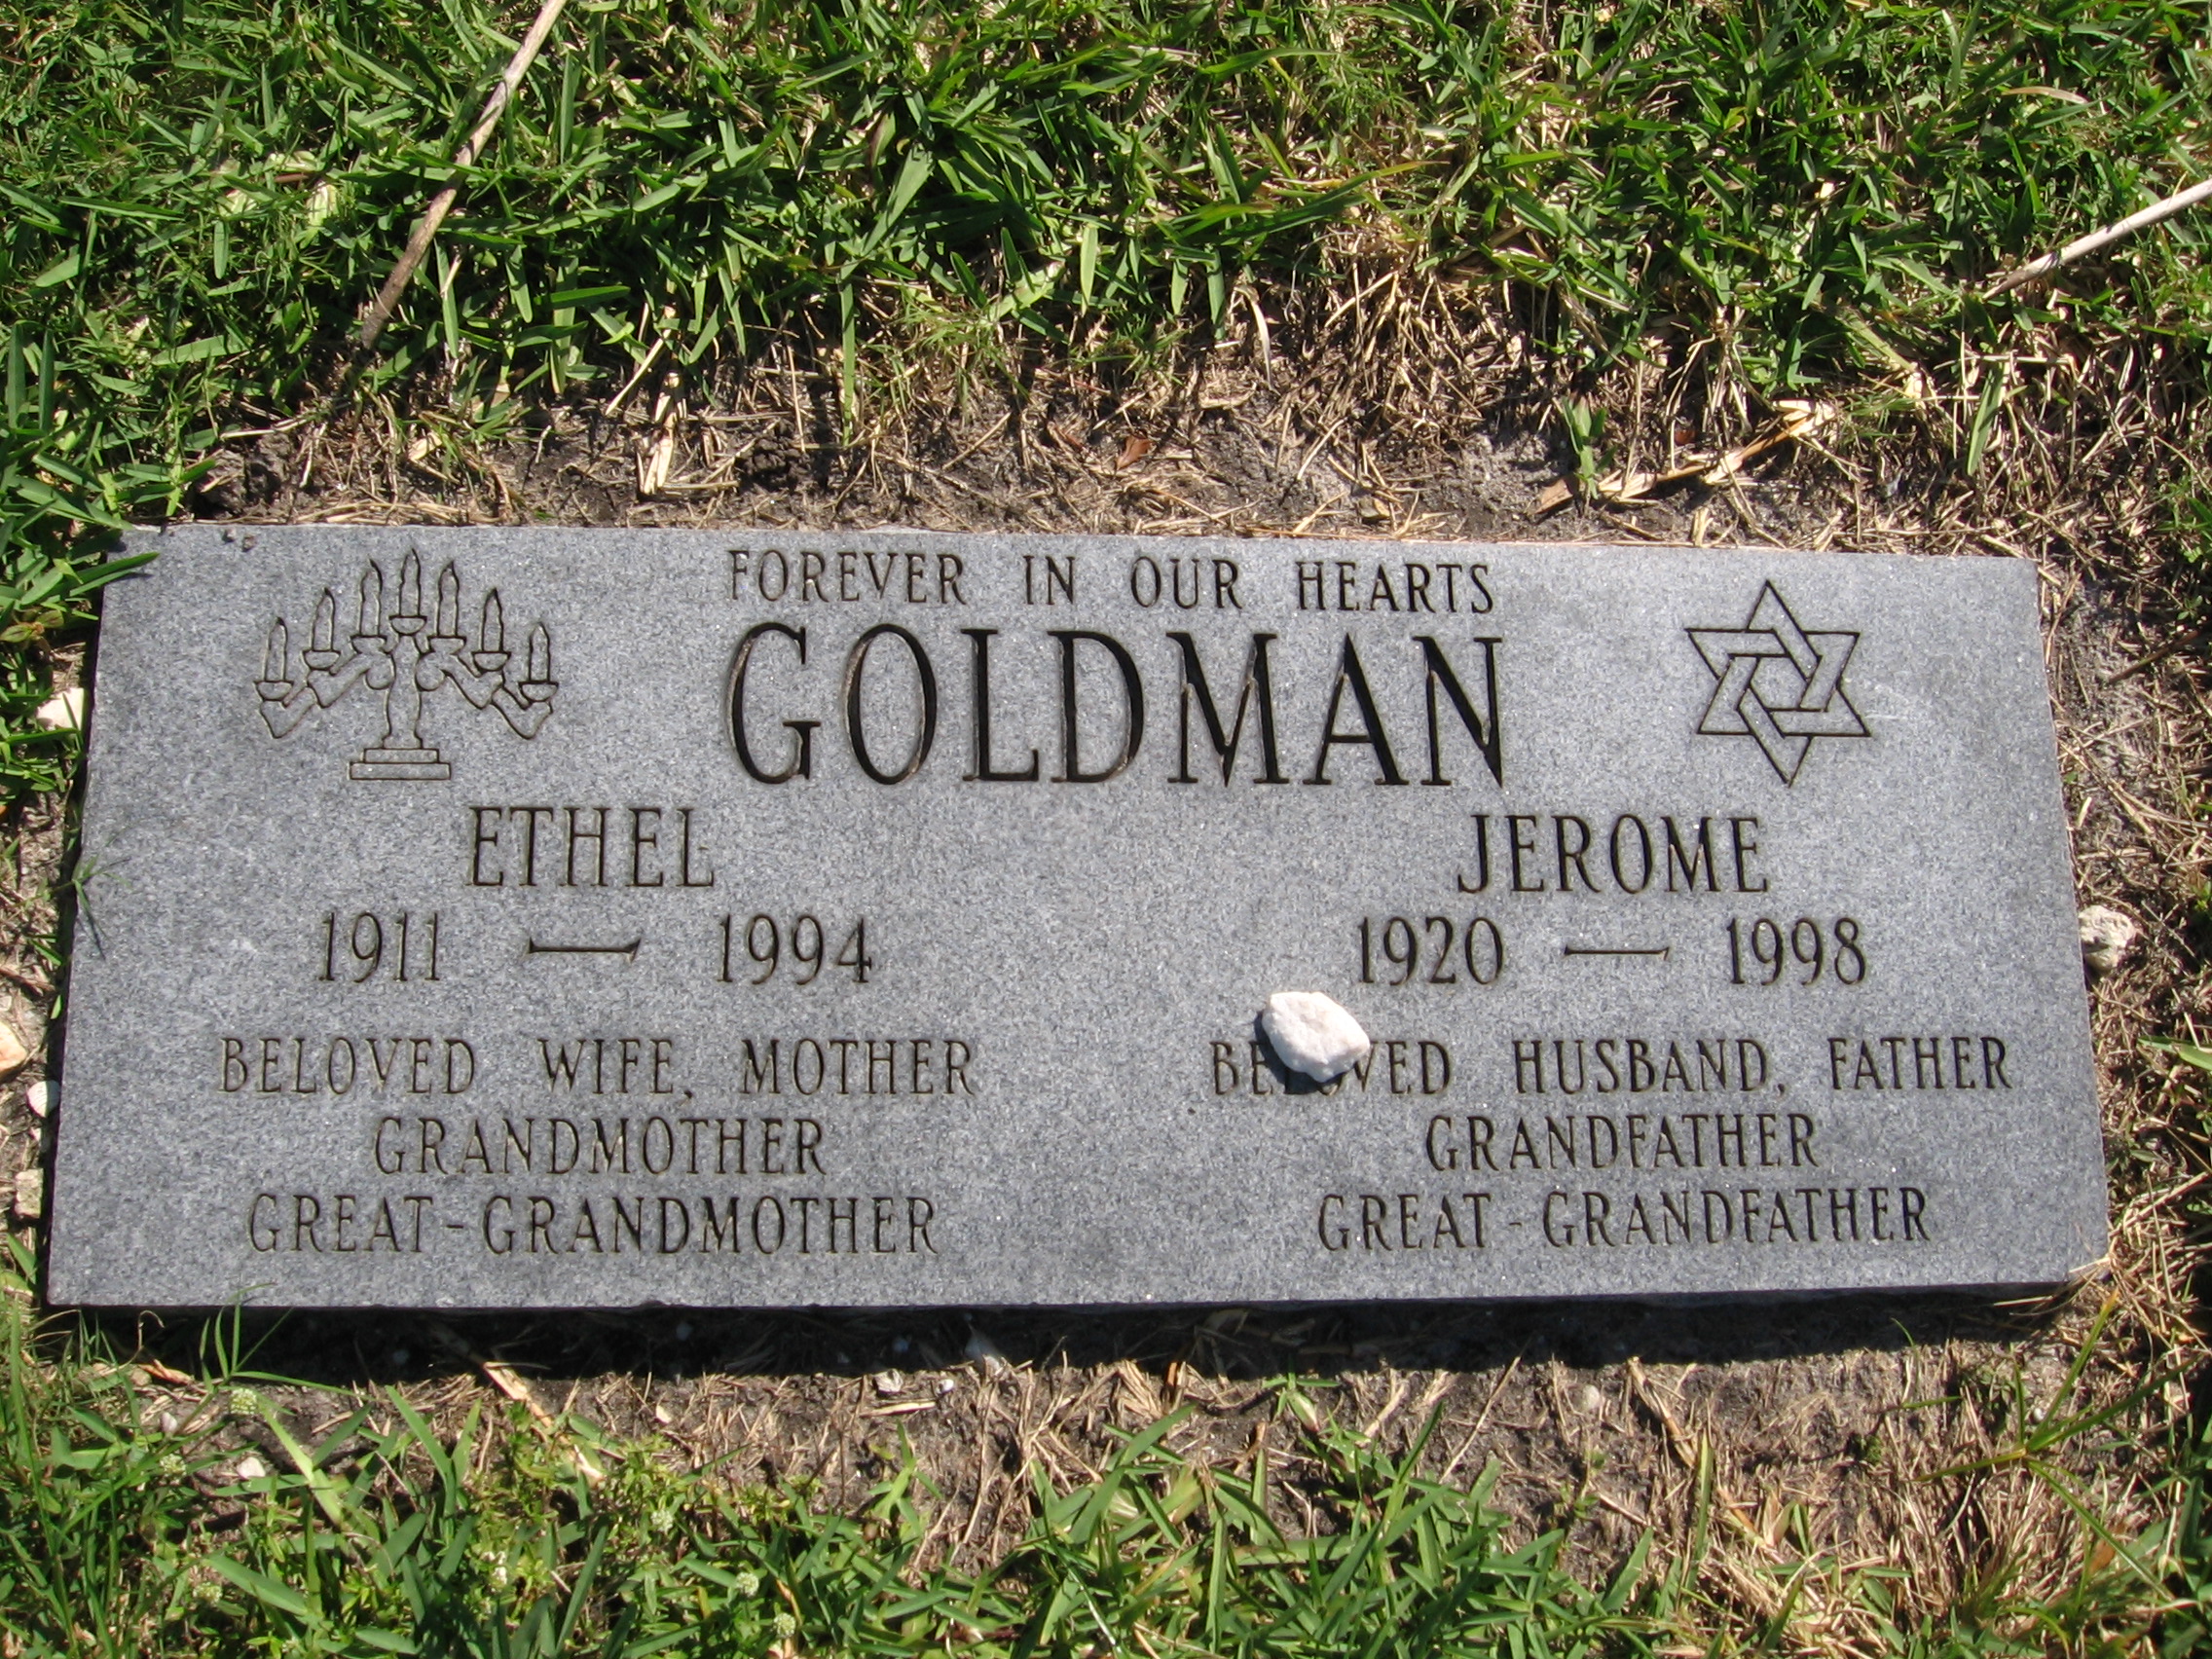 Ethel Goldman